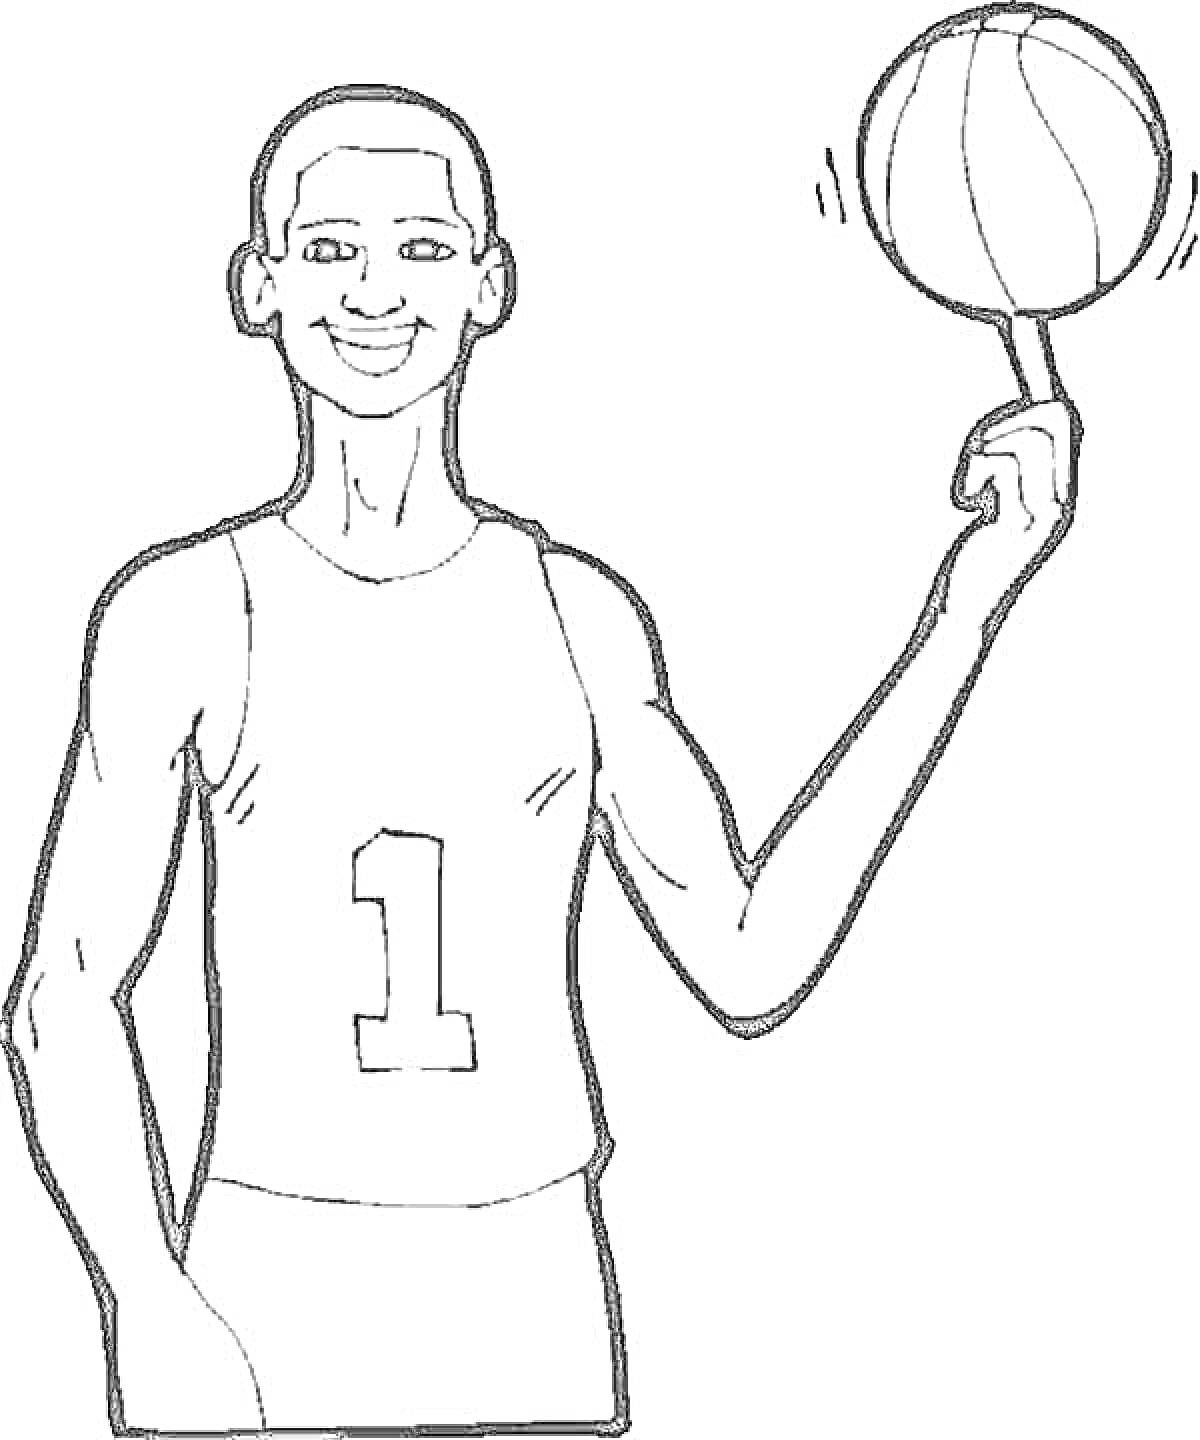 Раскраска Человек в баскетбольной форме с цифрой 1 на майке вращает баскетбольный мяч на пальце